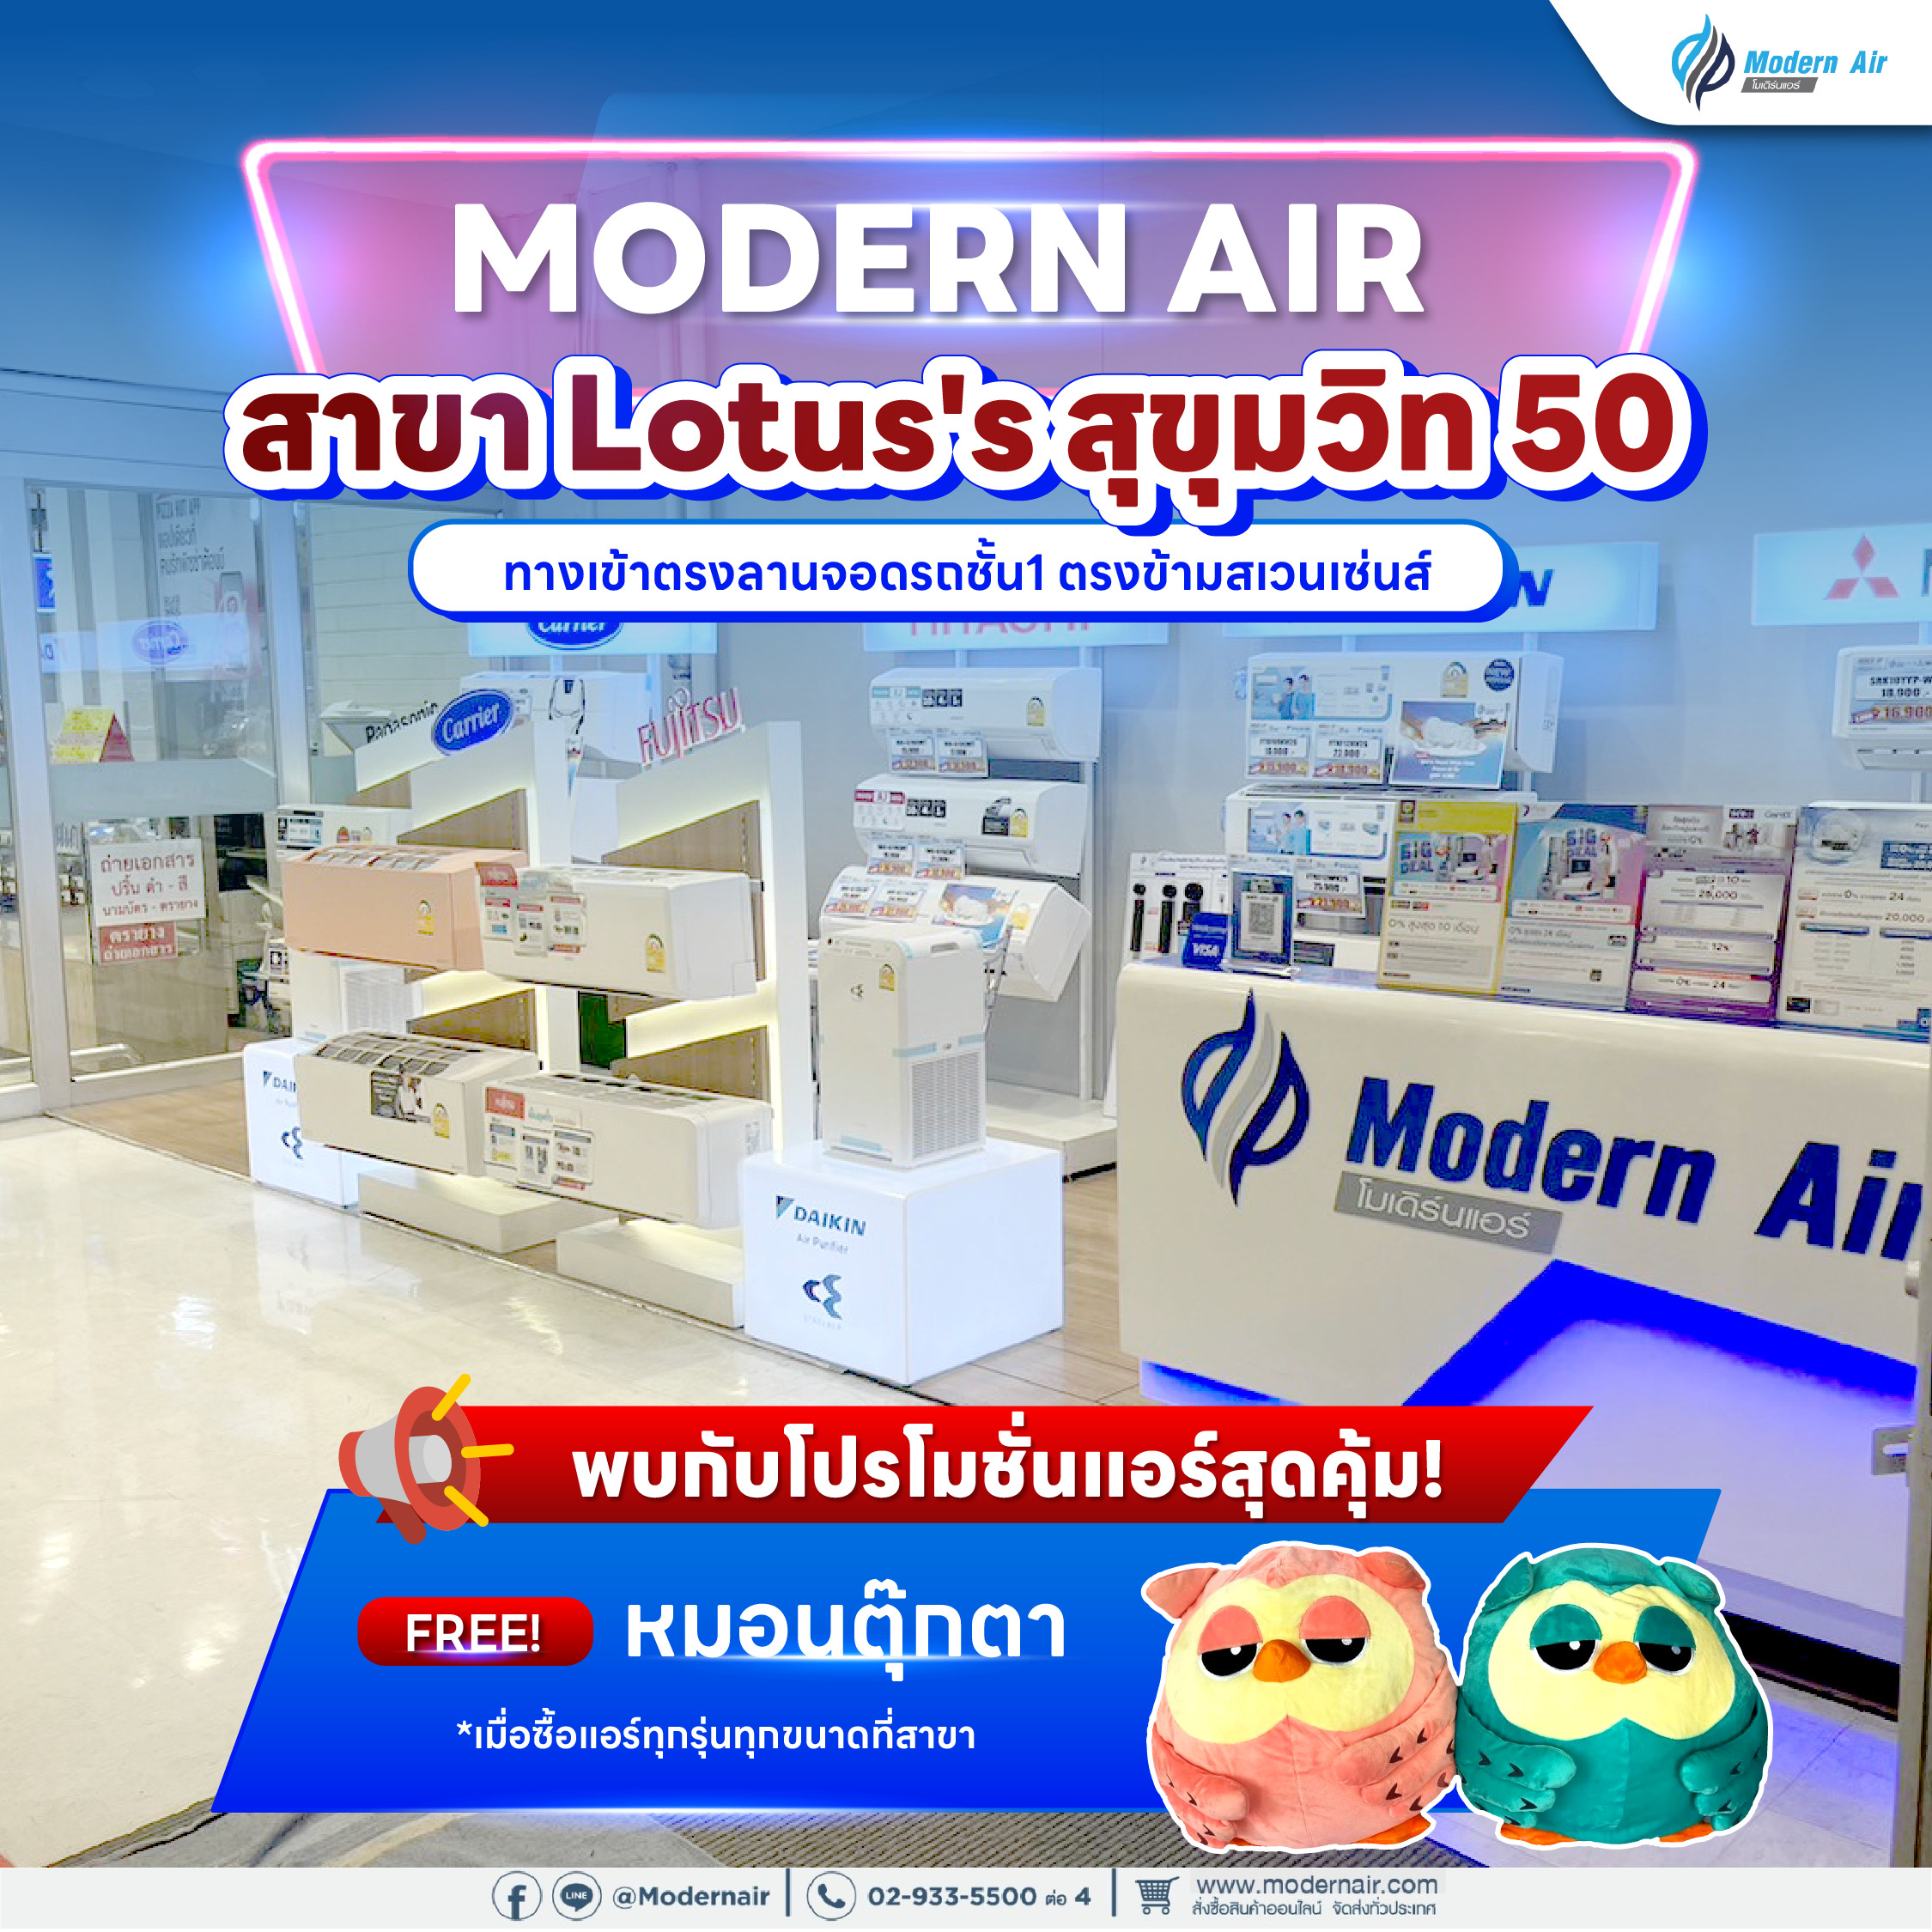 Modern Air X Lotus's สุขุมวิท 50 